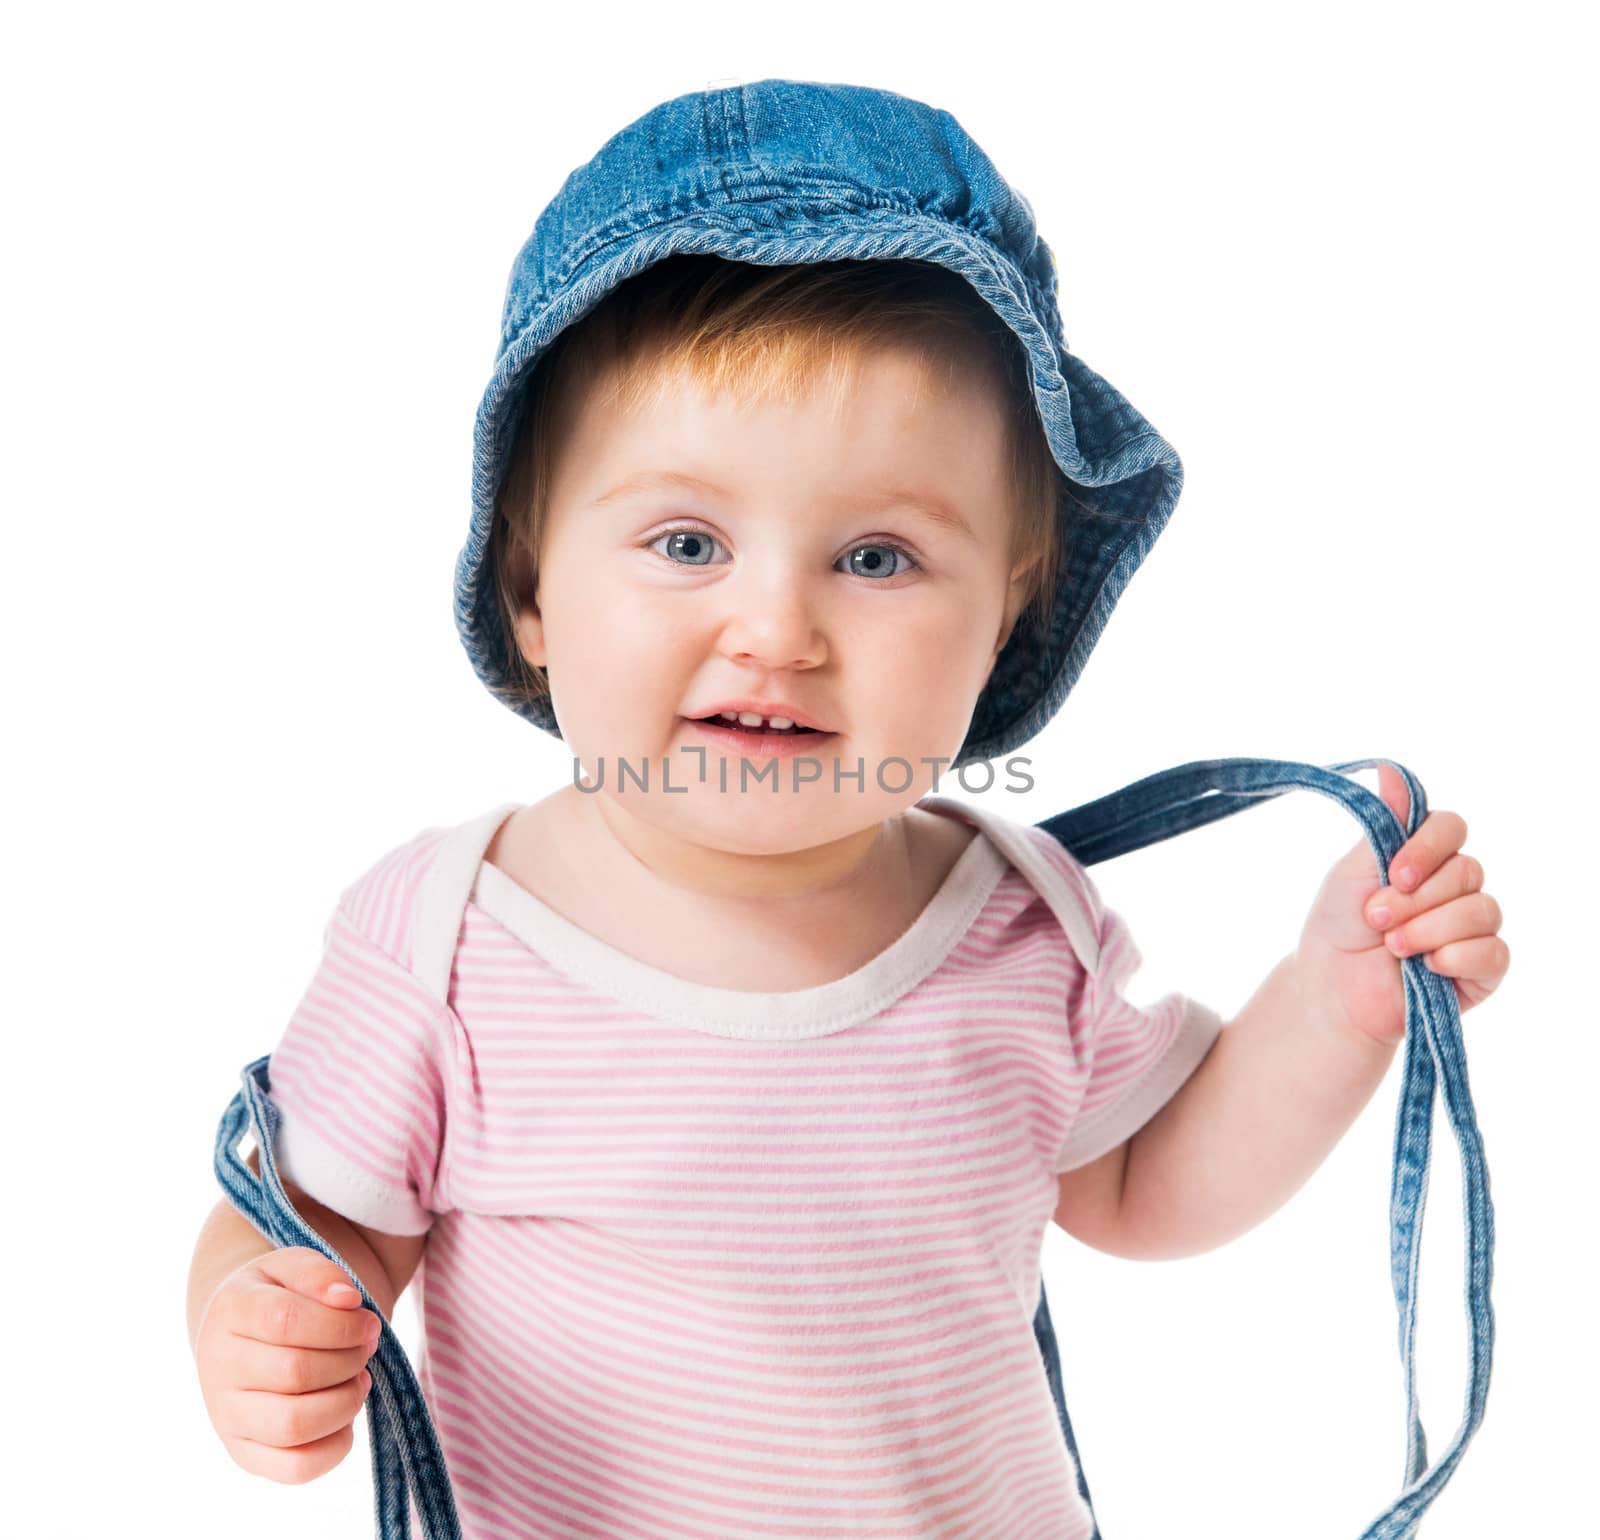 bright closeup portrait of adorable baby in denim cap